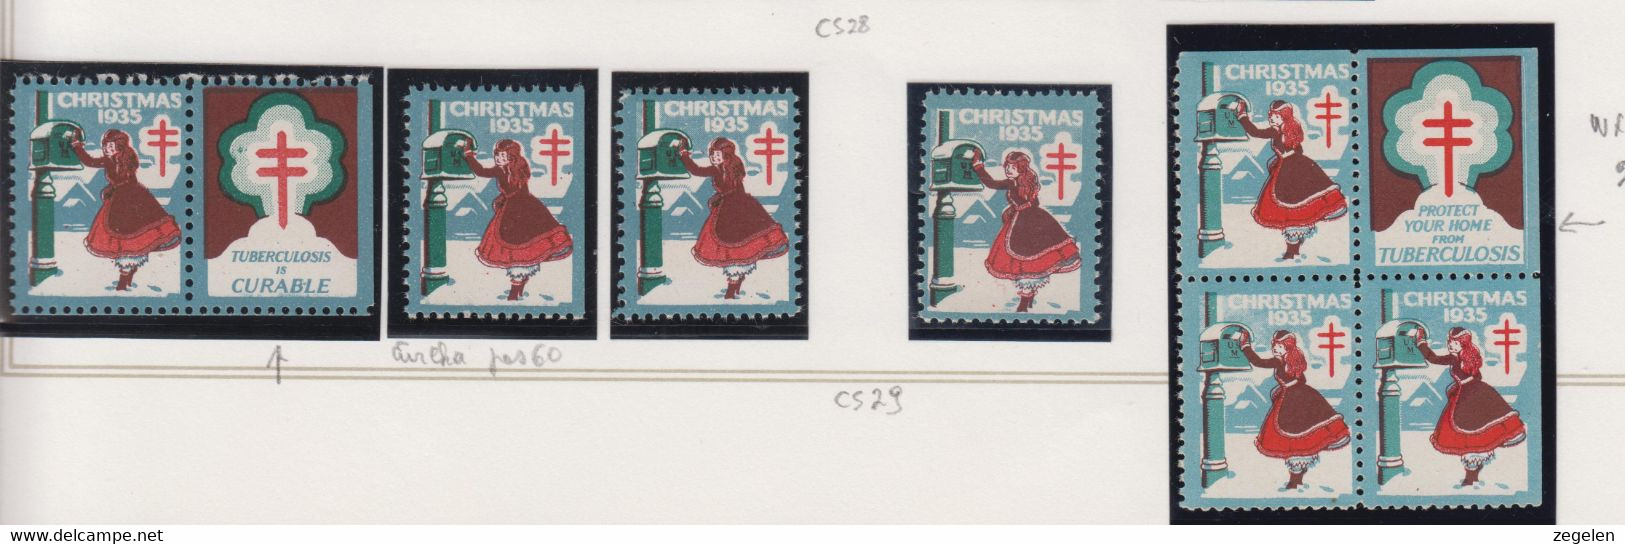 Verenigde Staten Kerstvignet Scott-cat. Jaar 1935 CS29 WX76/77 1 Printermark/drukkenmerk + 2 Versch.vignetten - Ohne Zuordnung